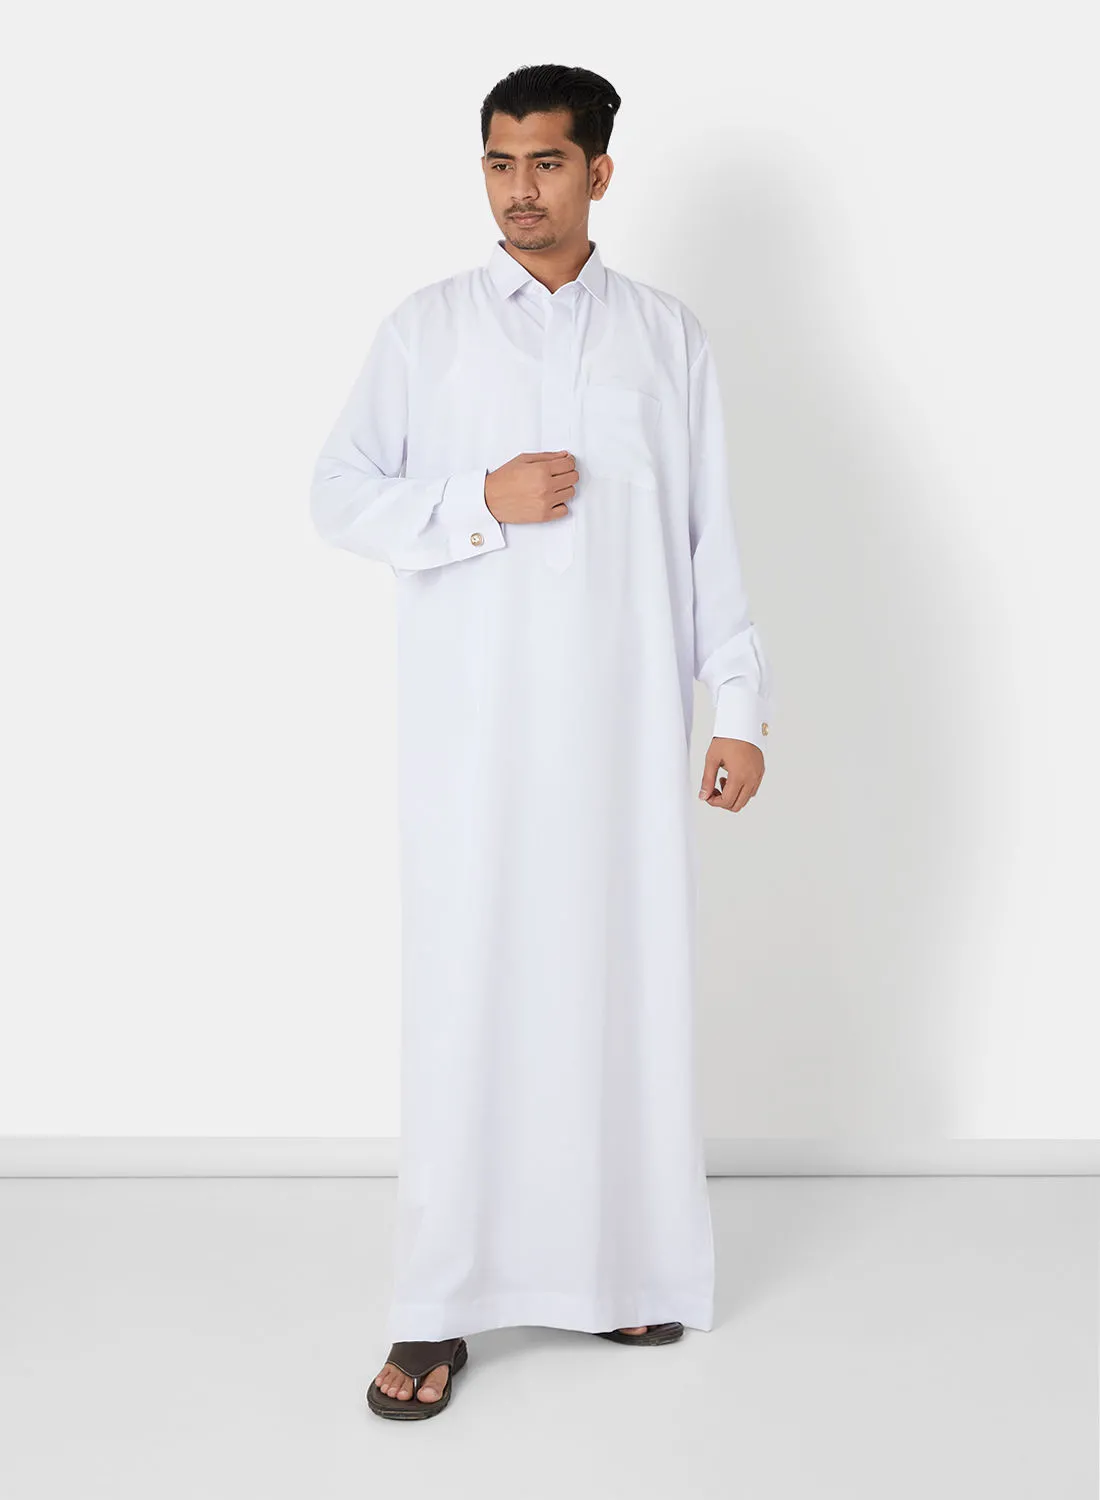 SIVVI for SAQR Premium Chest Pocket Saudi Kandora White